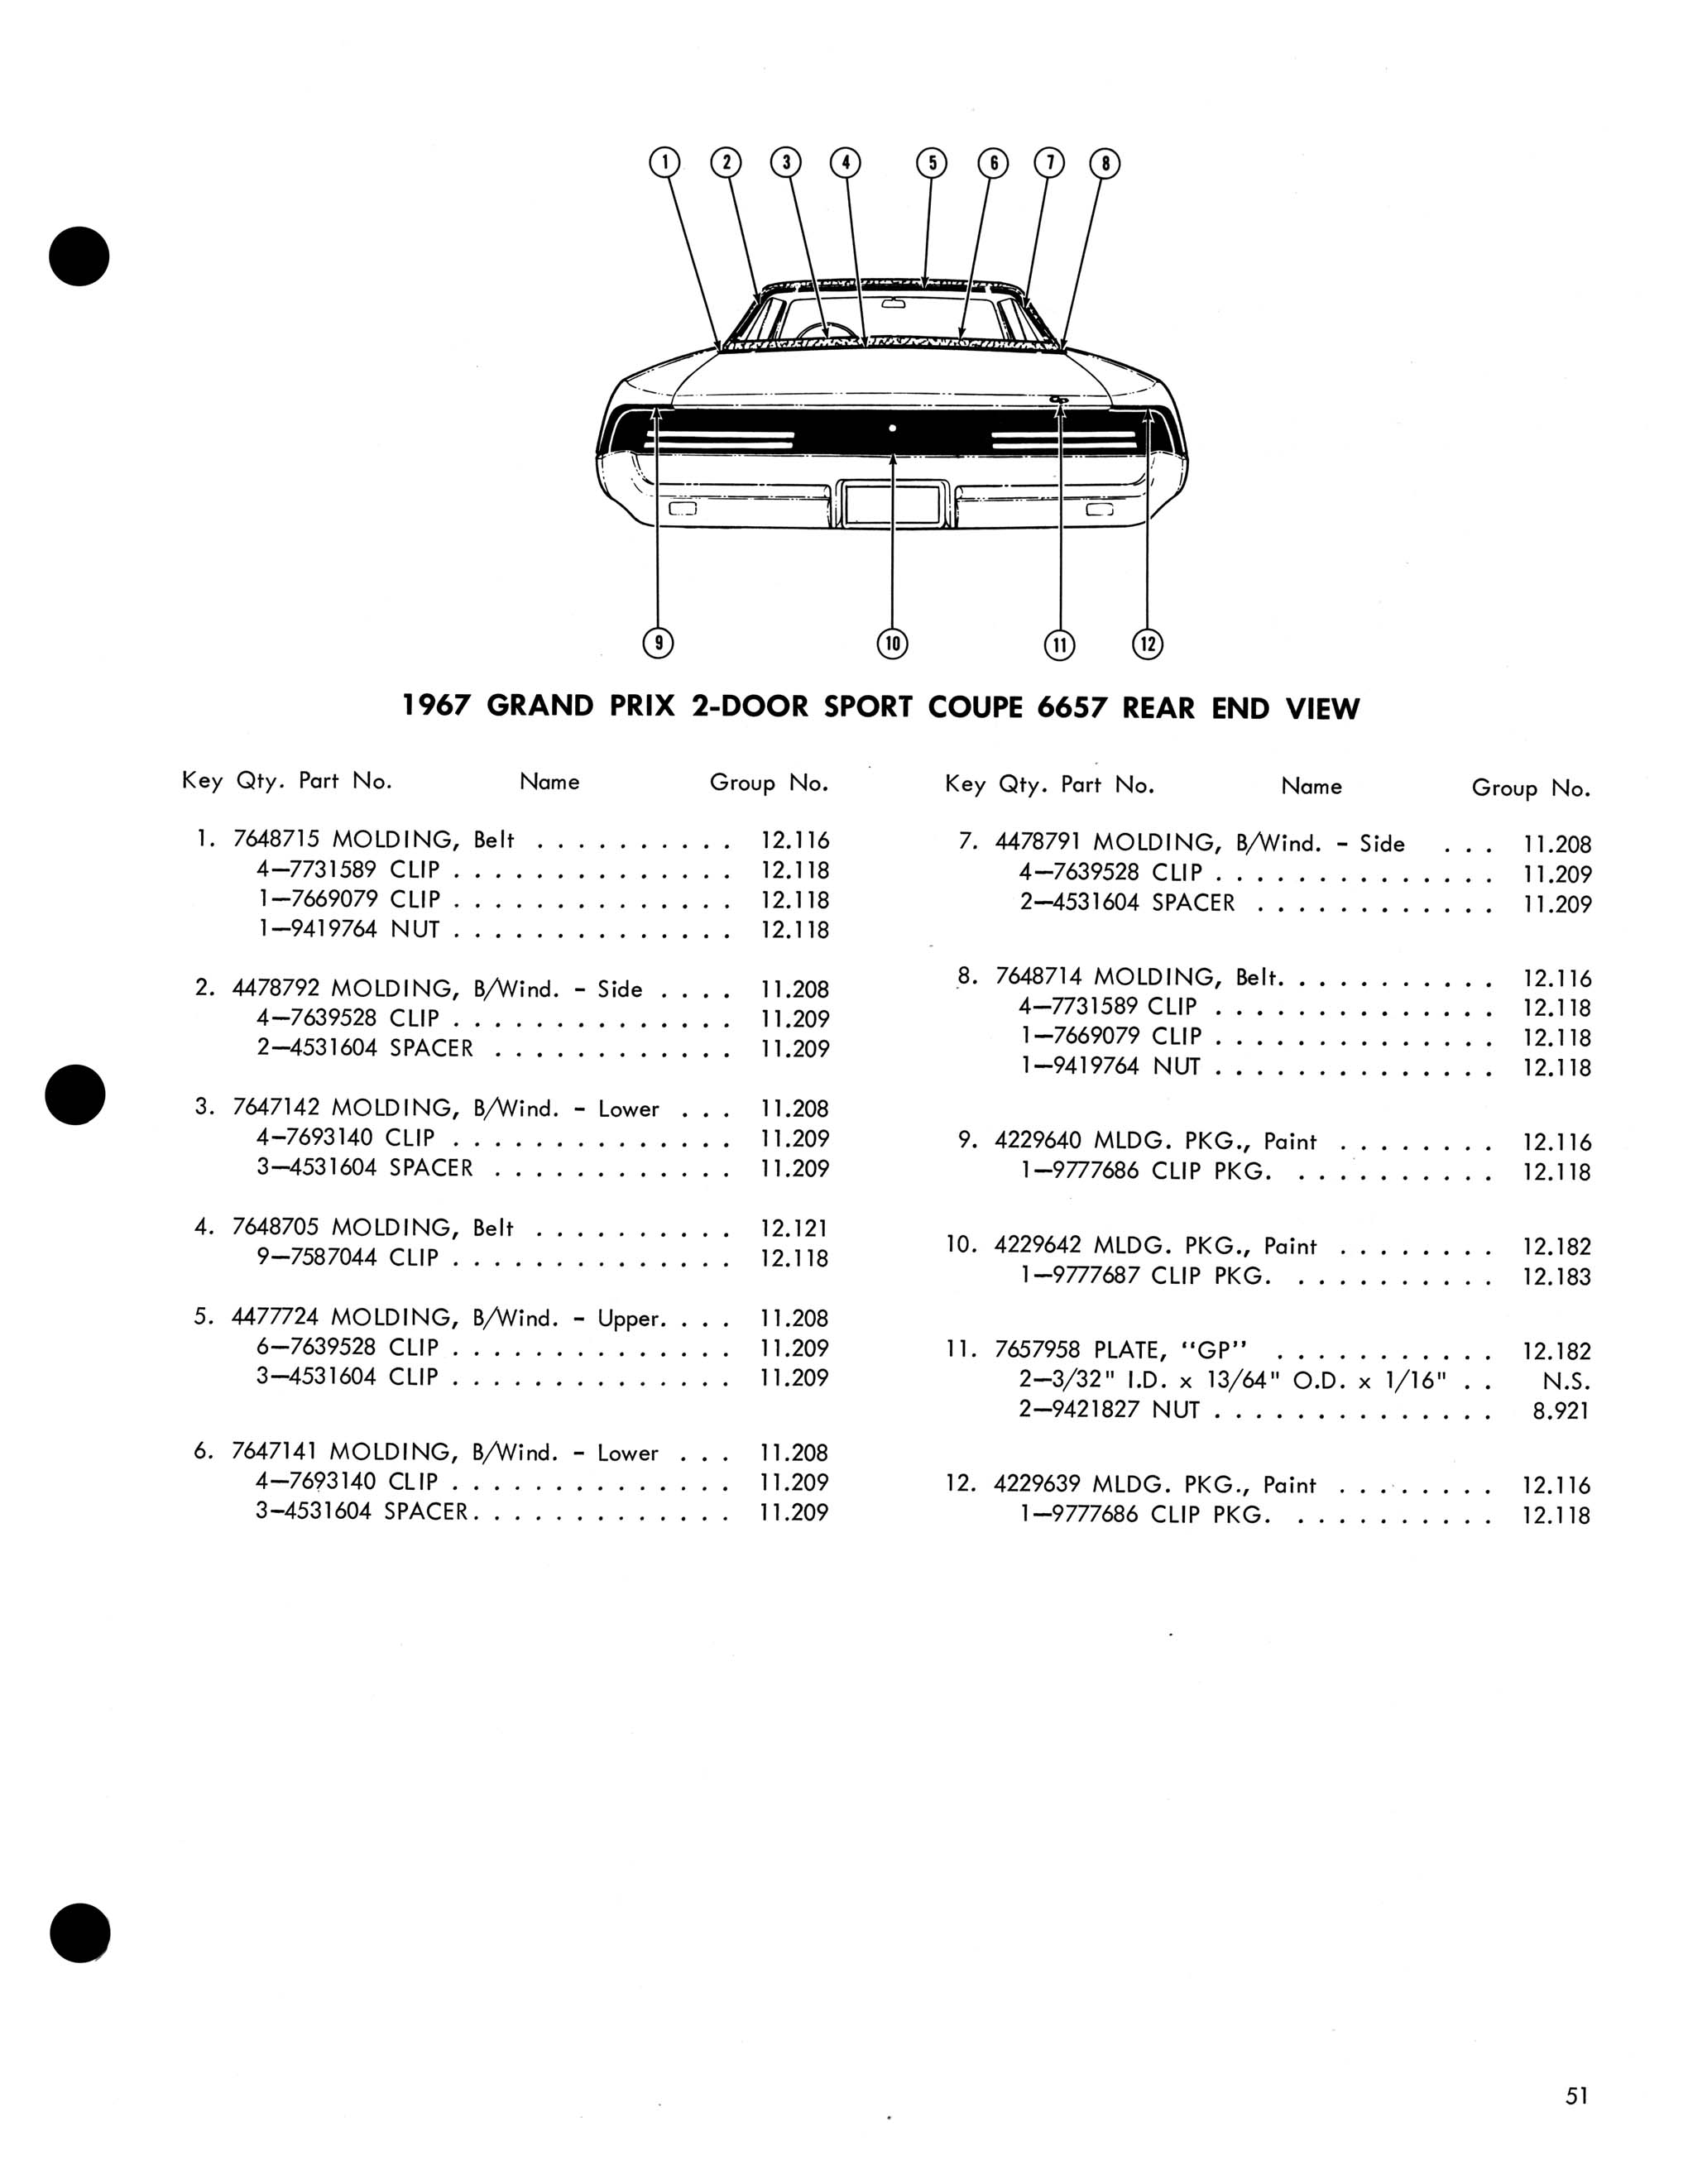 1967 Pontiac Molding and Clip Catalog-51